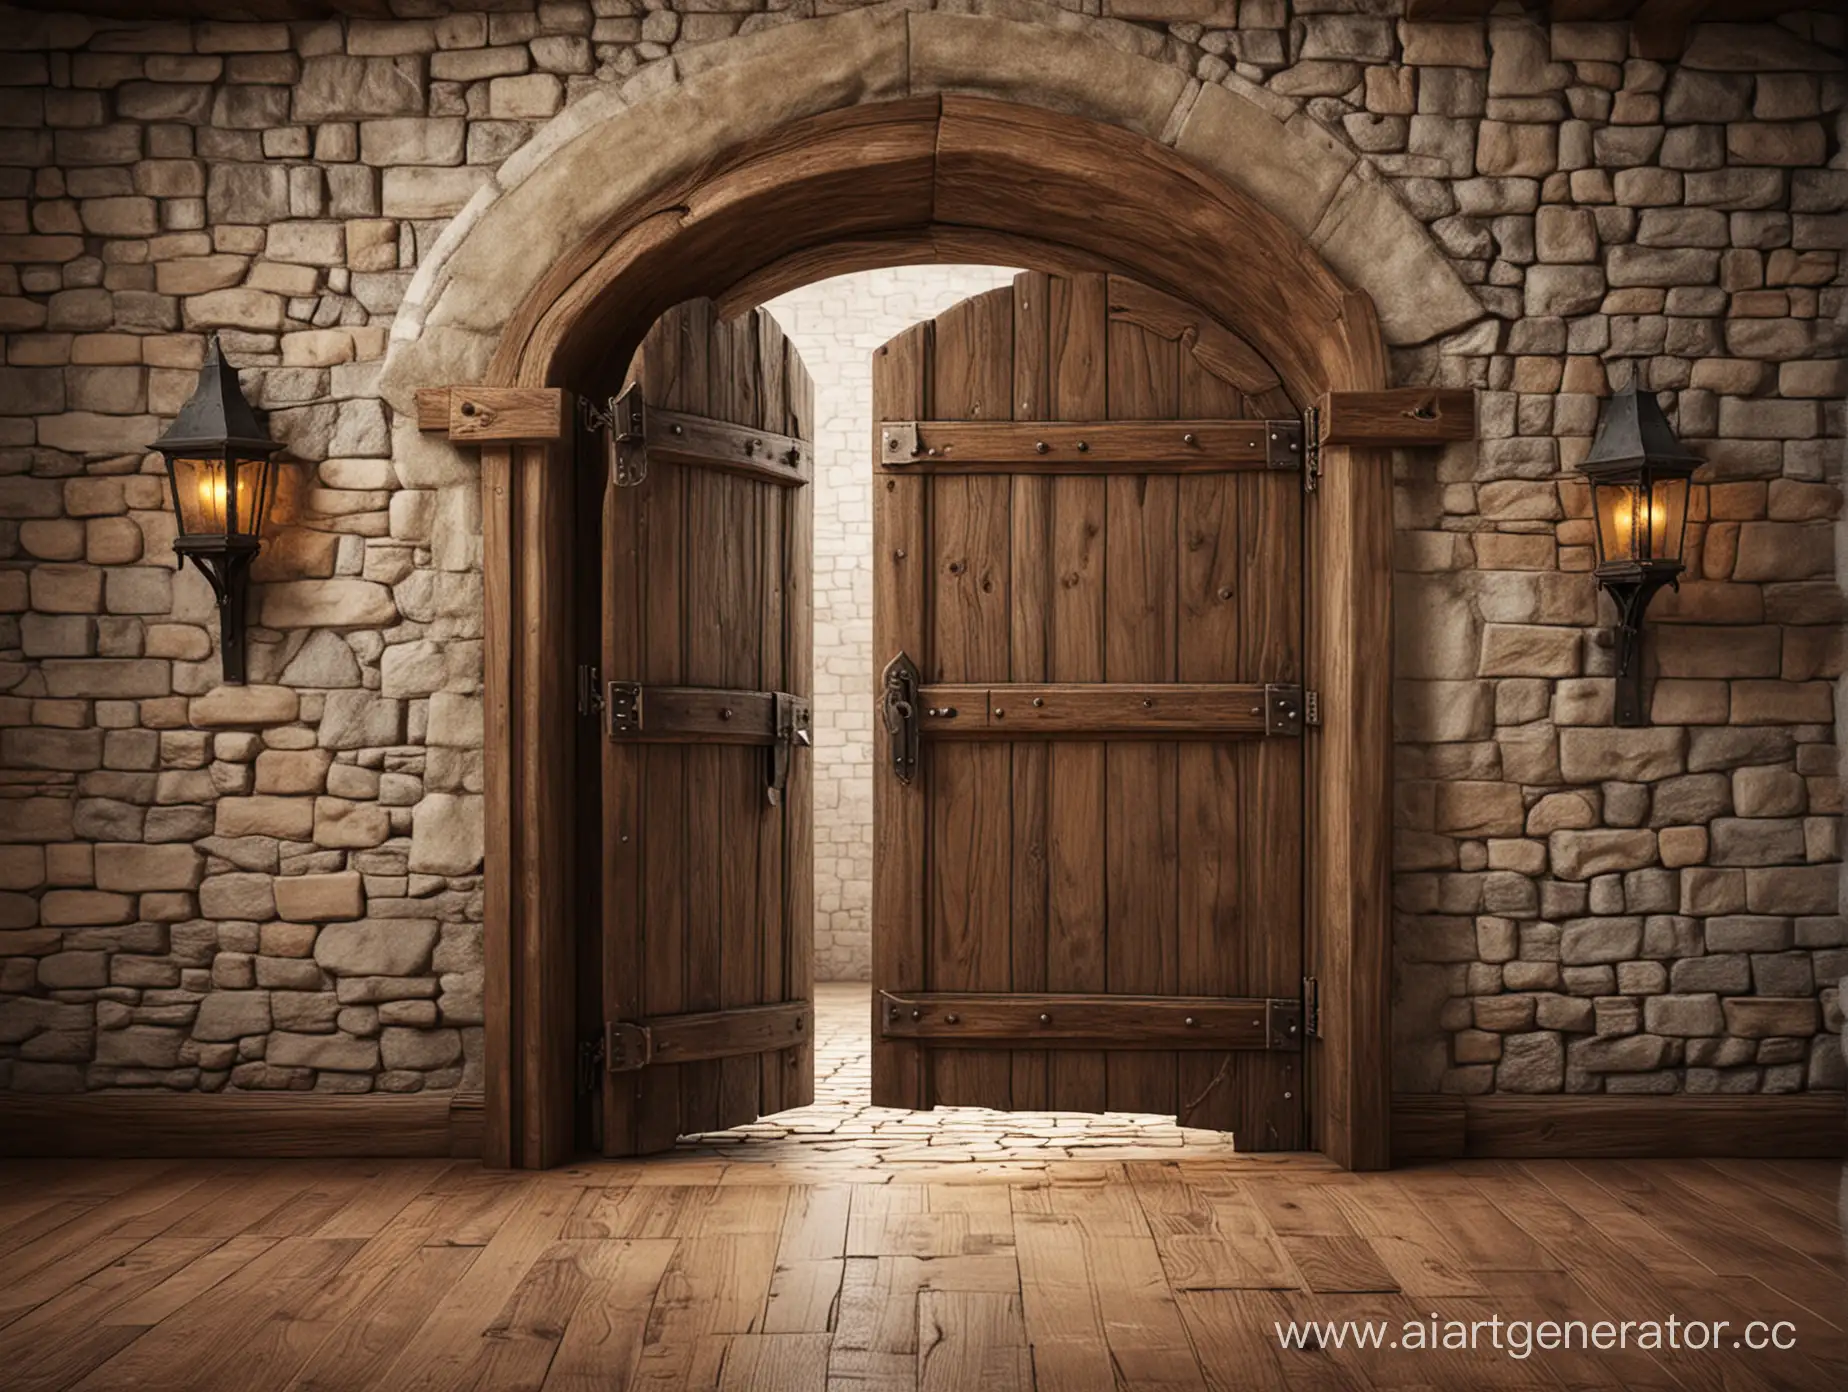 Medieval-Study-Room-with-Open-Doorway